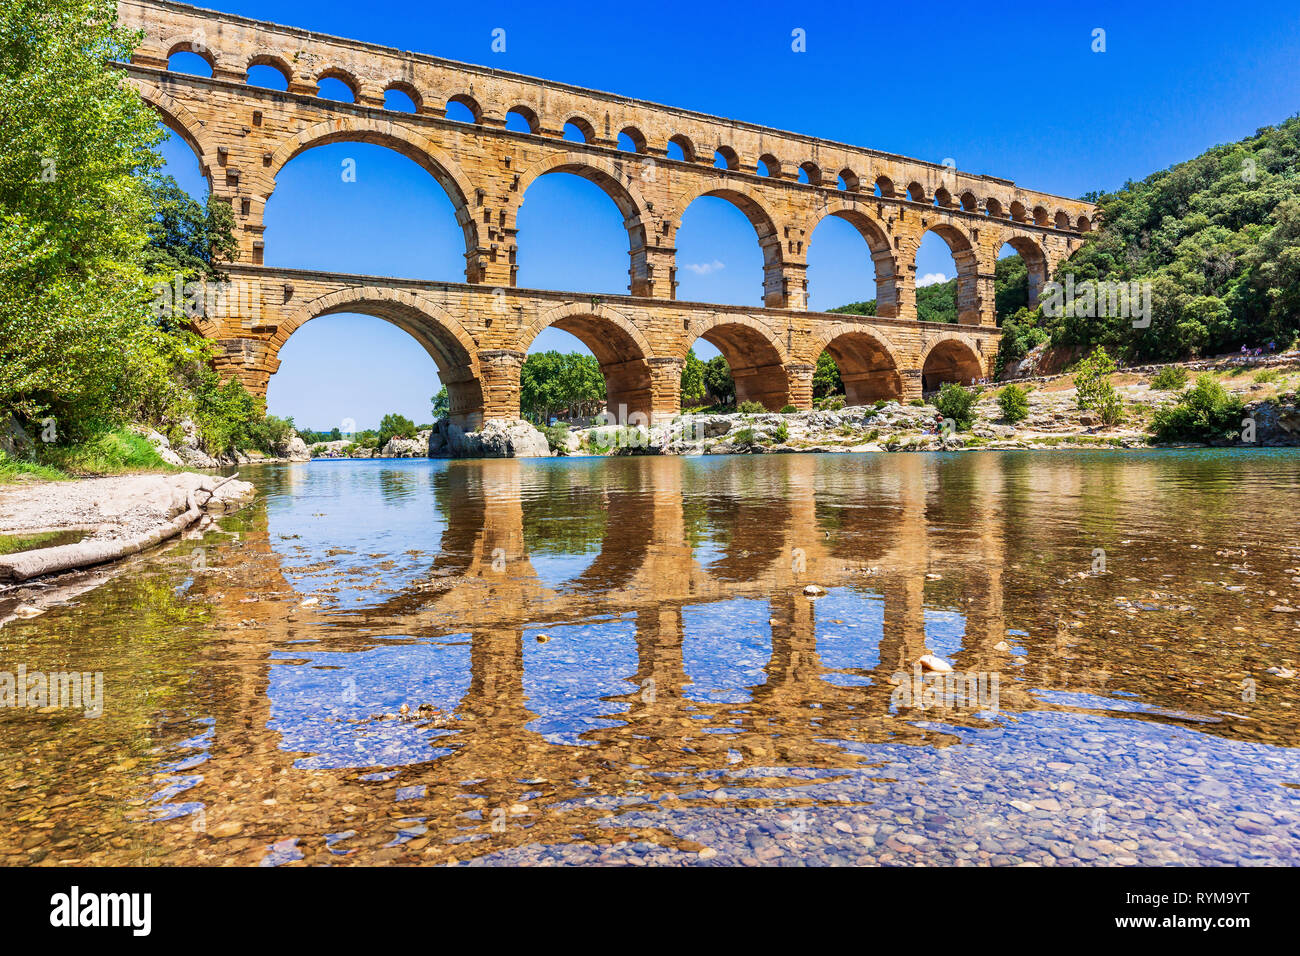 Nimes, Frankreich. Aquädukt Pont du Gard. Stockfoto